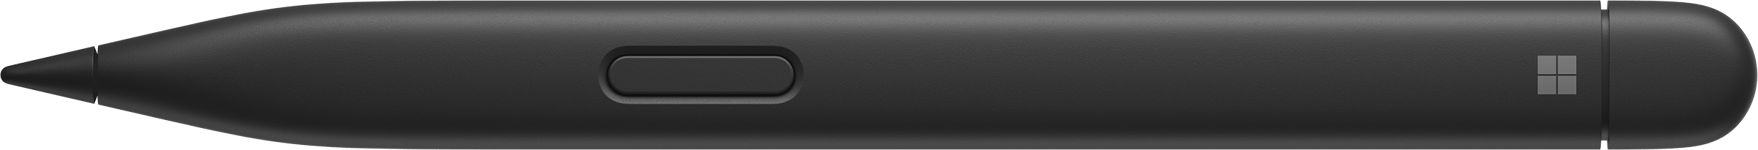 Surface Slim-penna 2 för företag